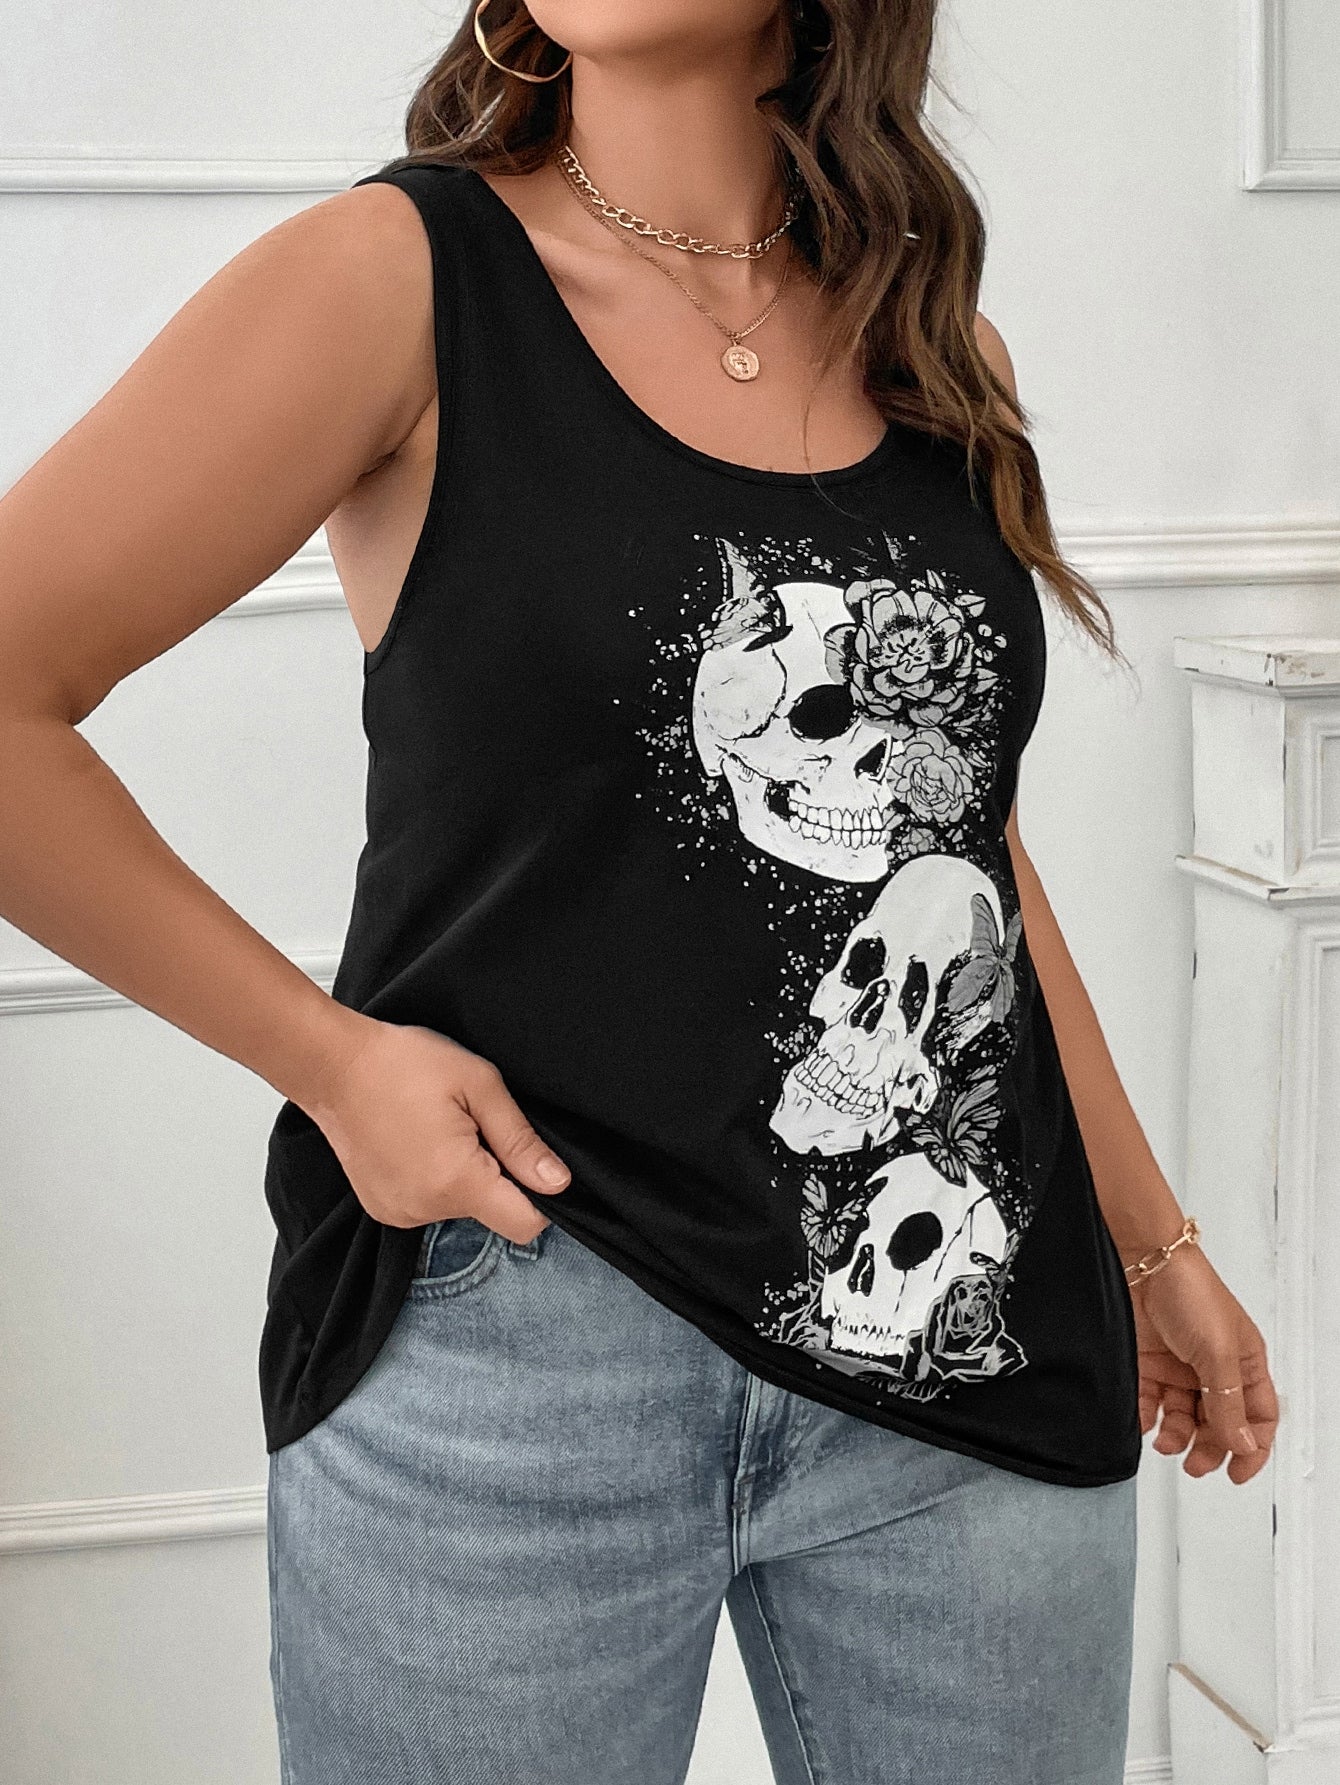 Spooky Scary Skeletons Plus Skull & Floral Print Tank Top